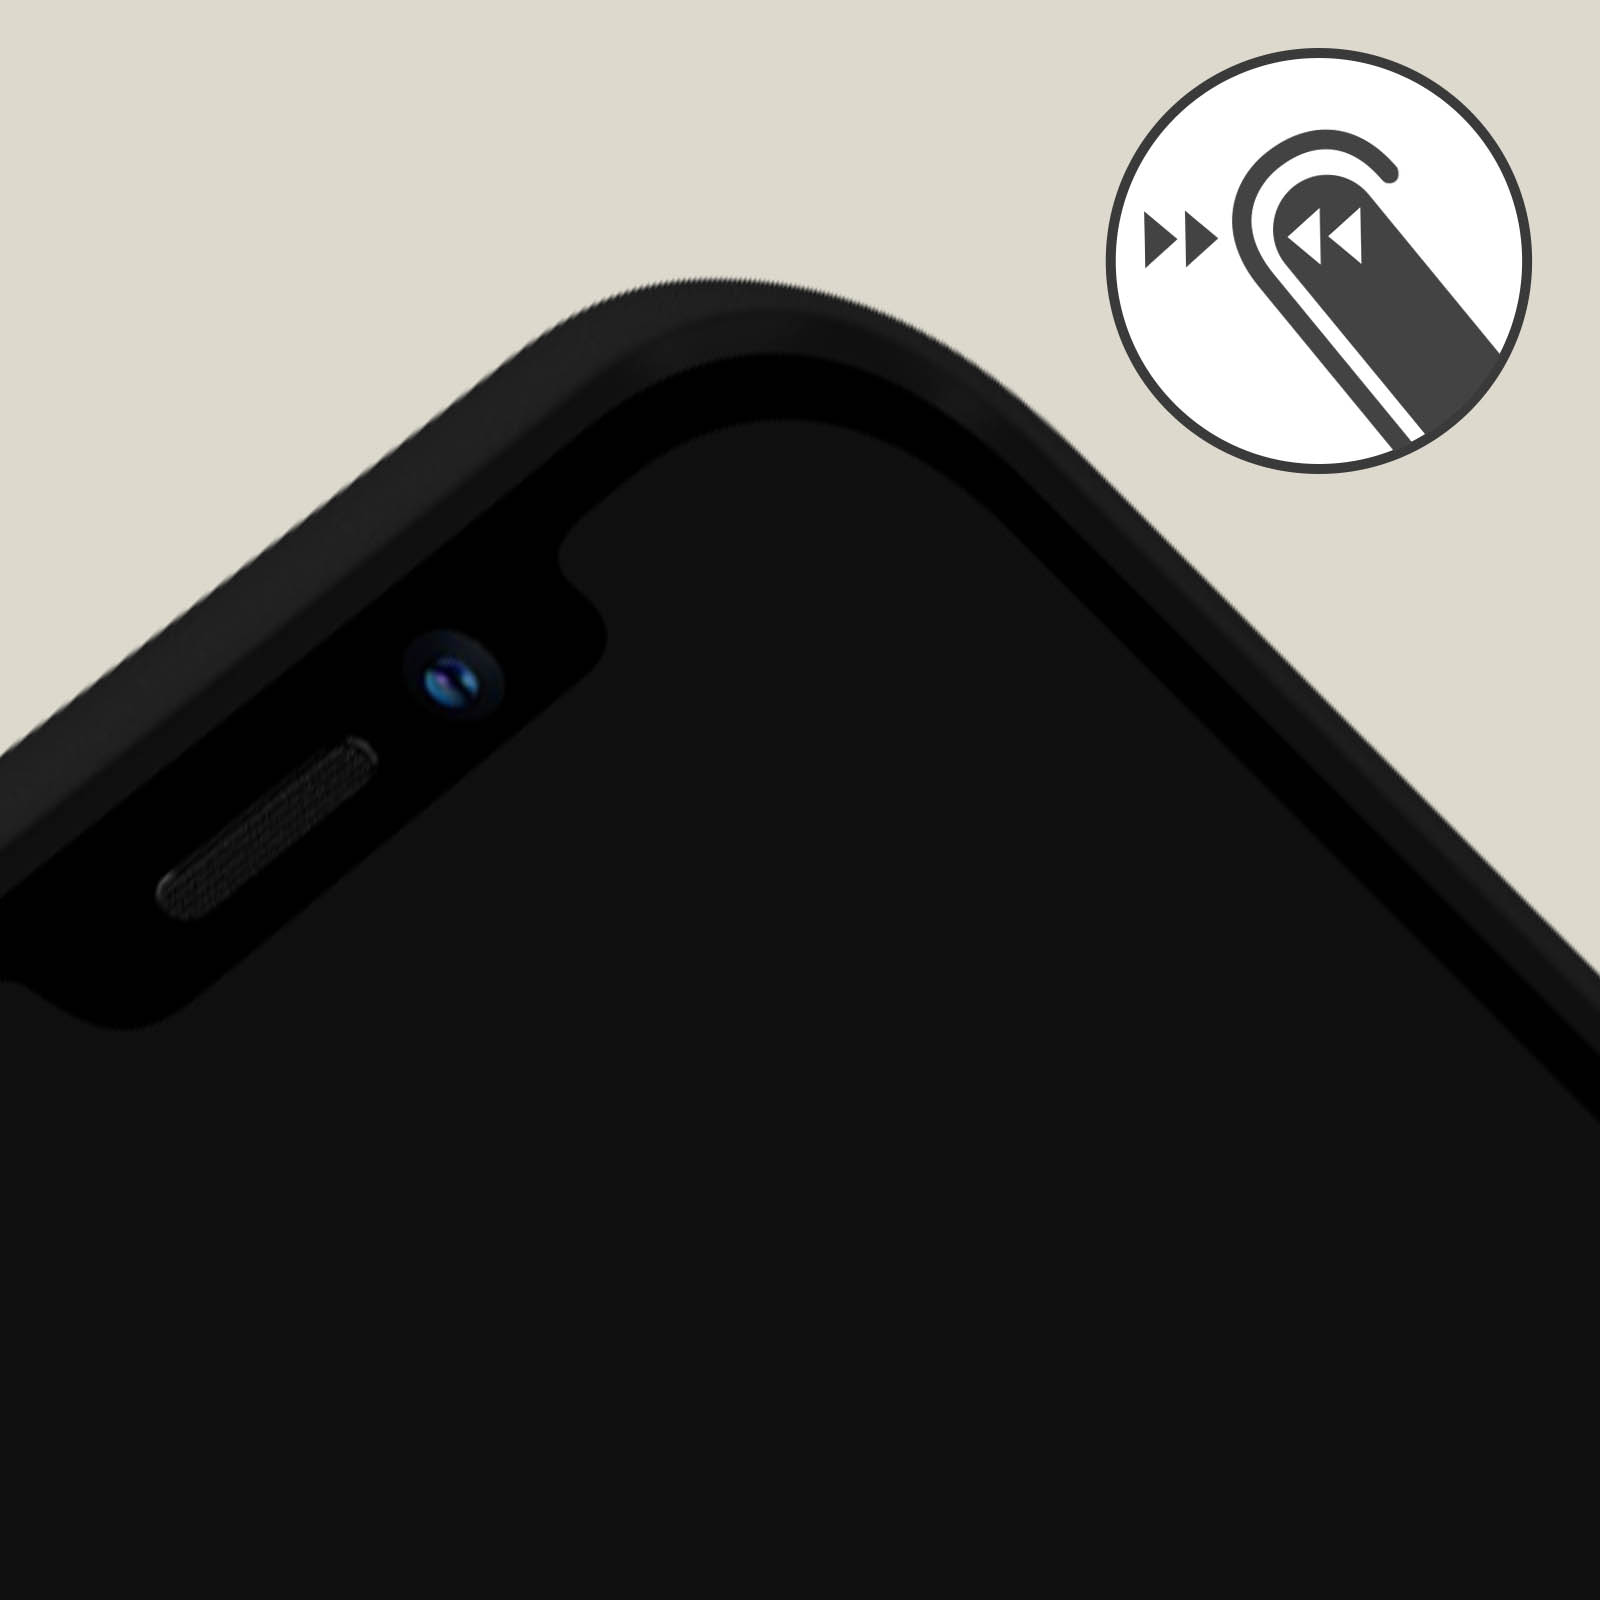 RhinoShield Coque pour iPhone 13 Pro Max Mode Bumper et Renforcé Mod NX  Noir - Coque téléphone - LDLC